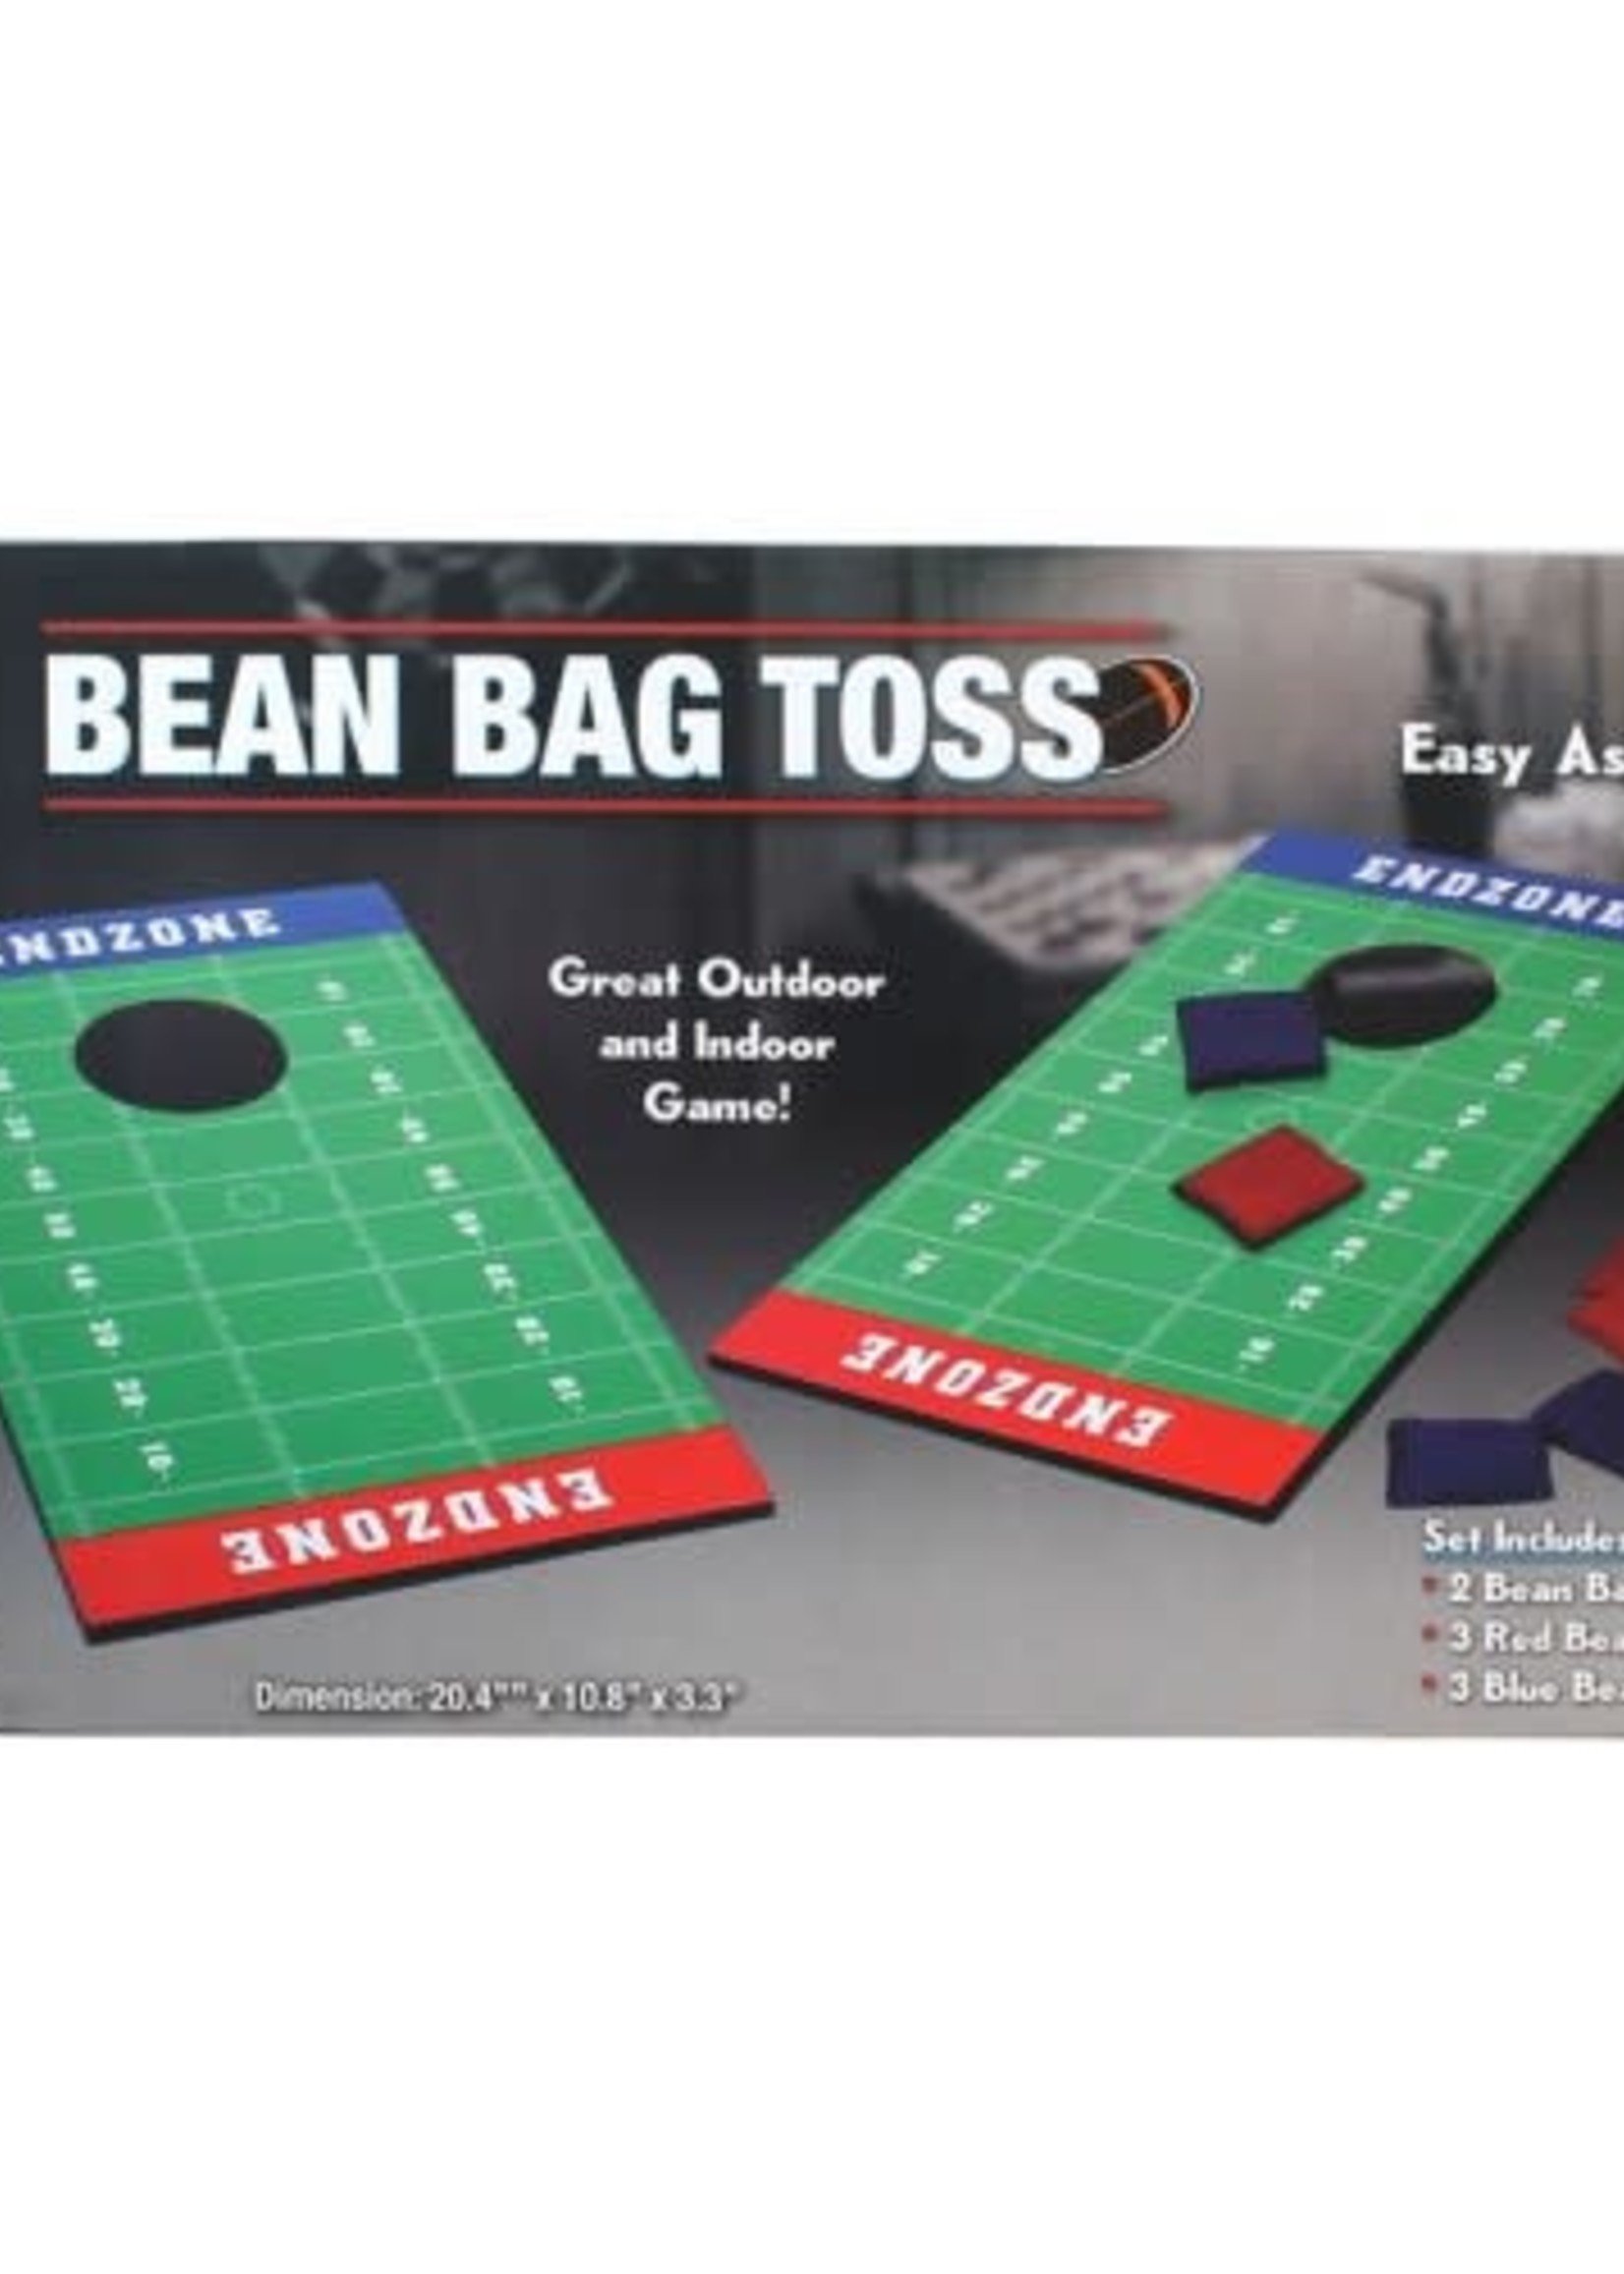 Bean bag toss - Le coin du jouet